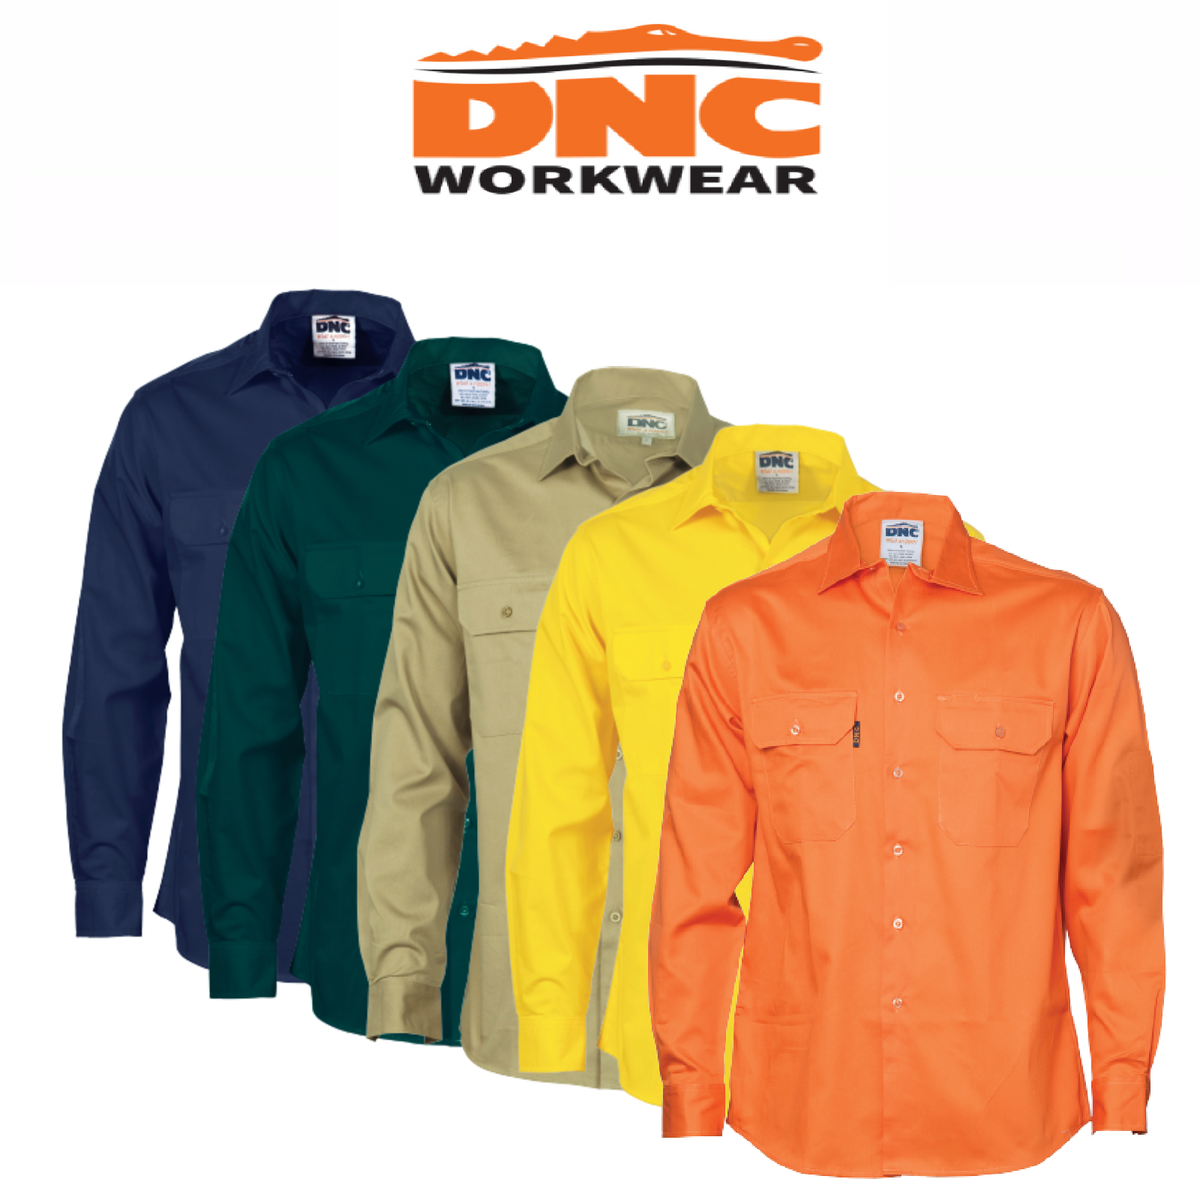 DNC Workwear Cool-Breeze Work Shirt - Short Sleeve Lightweight Cotton 3208